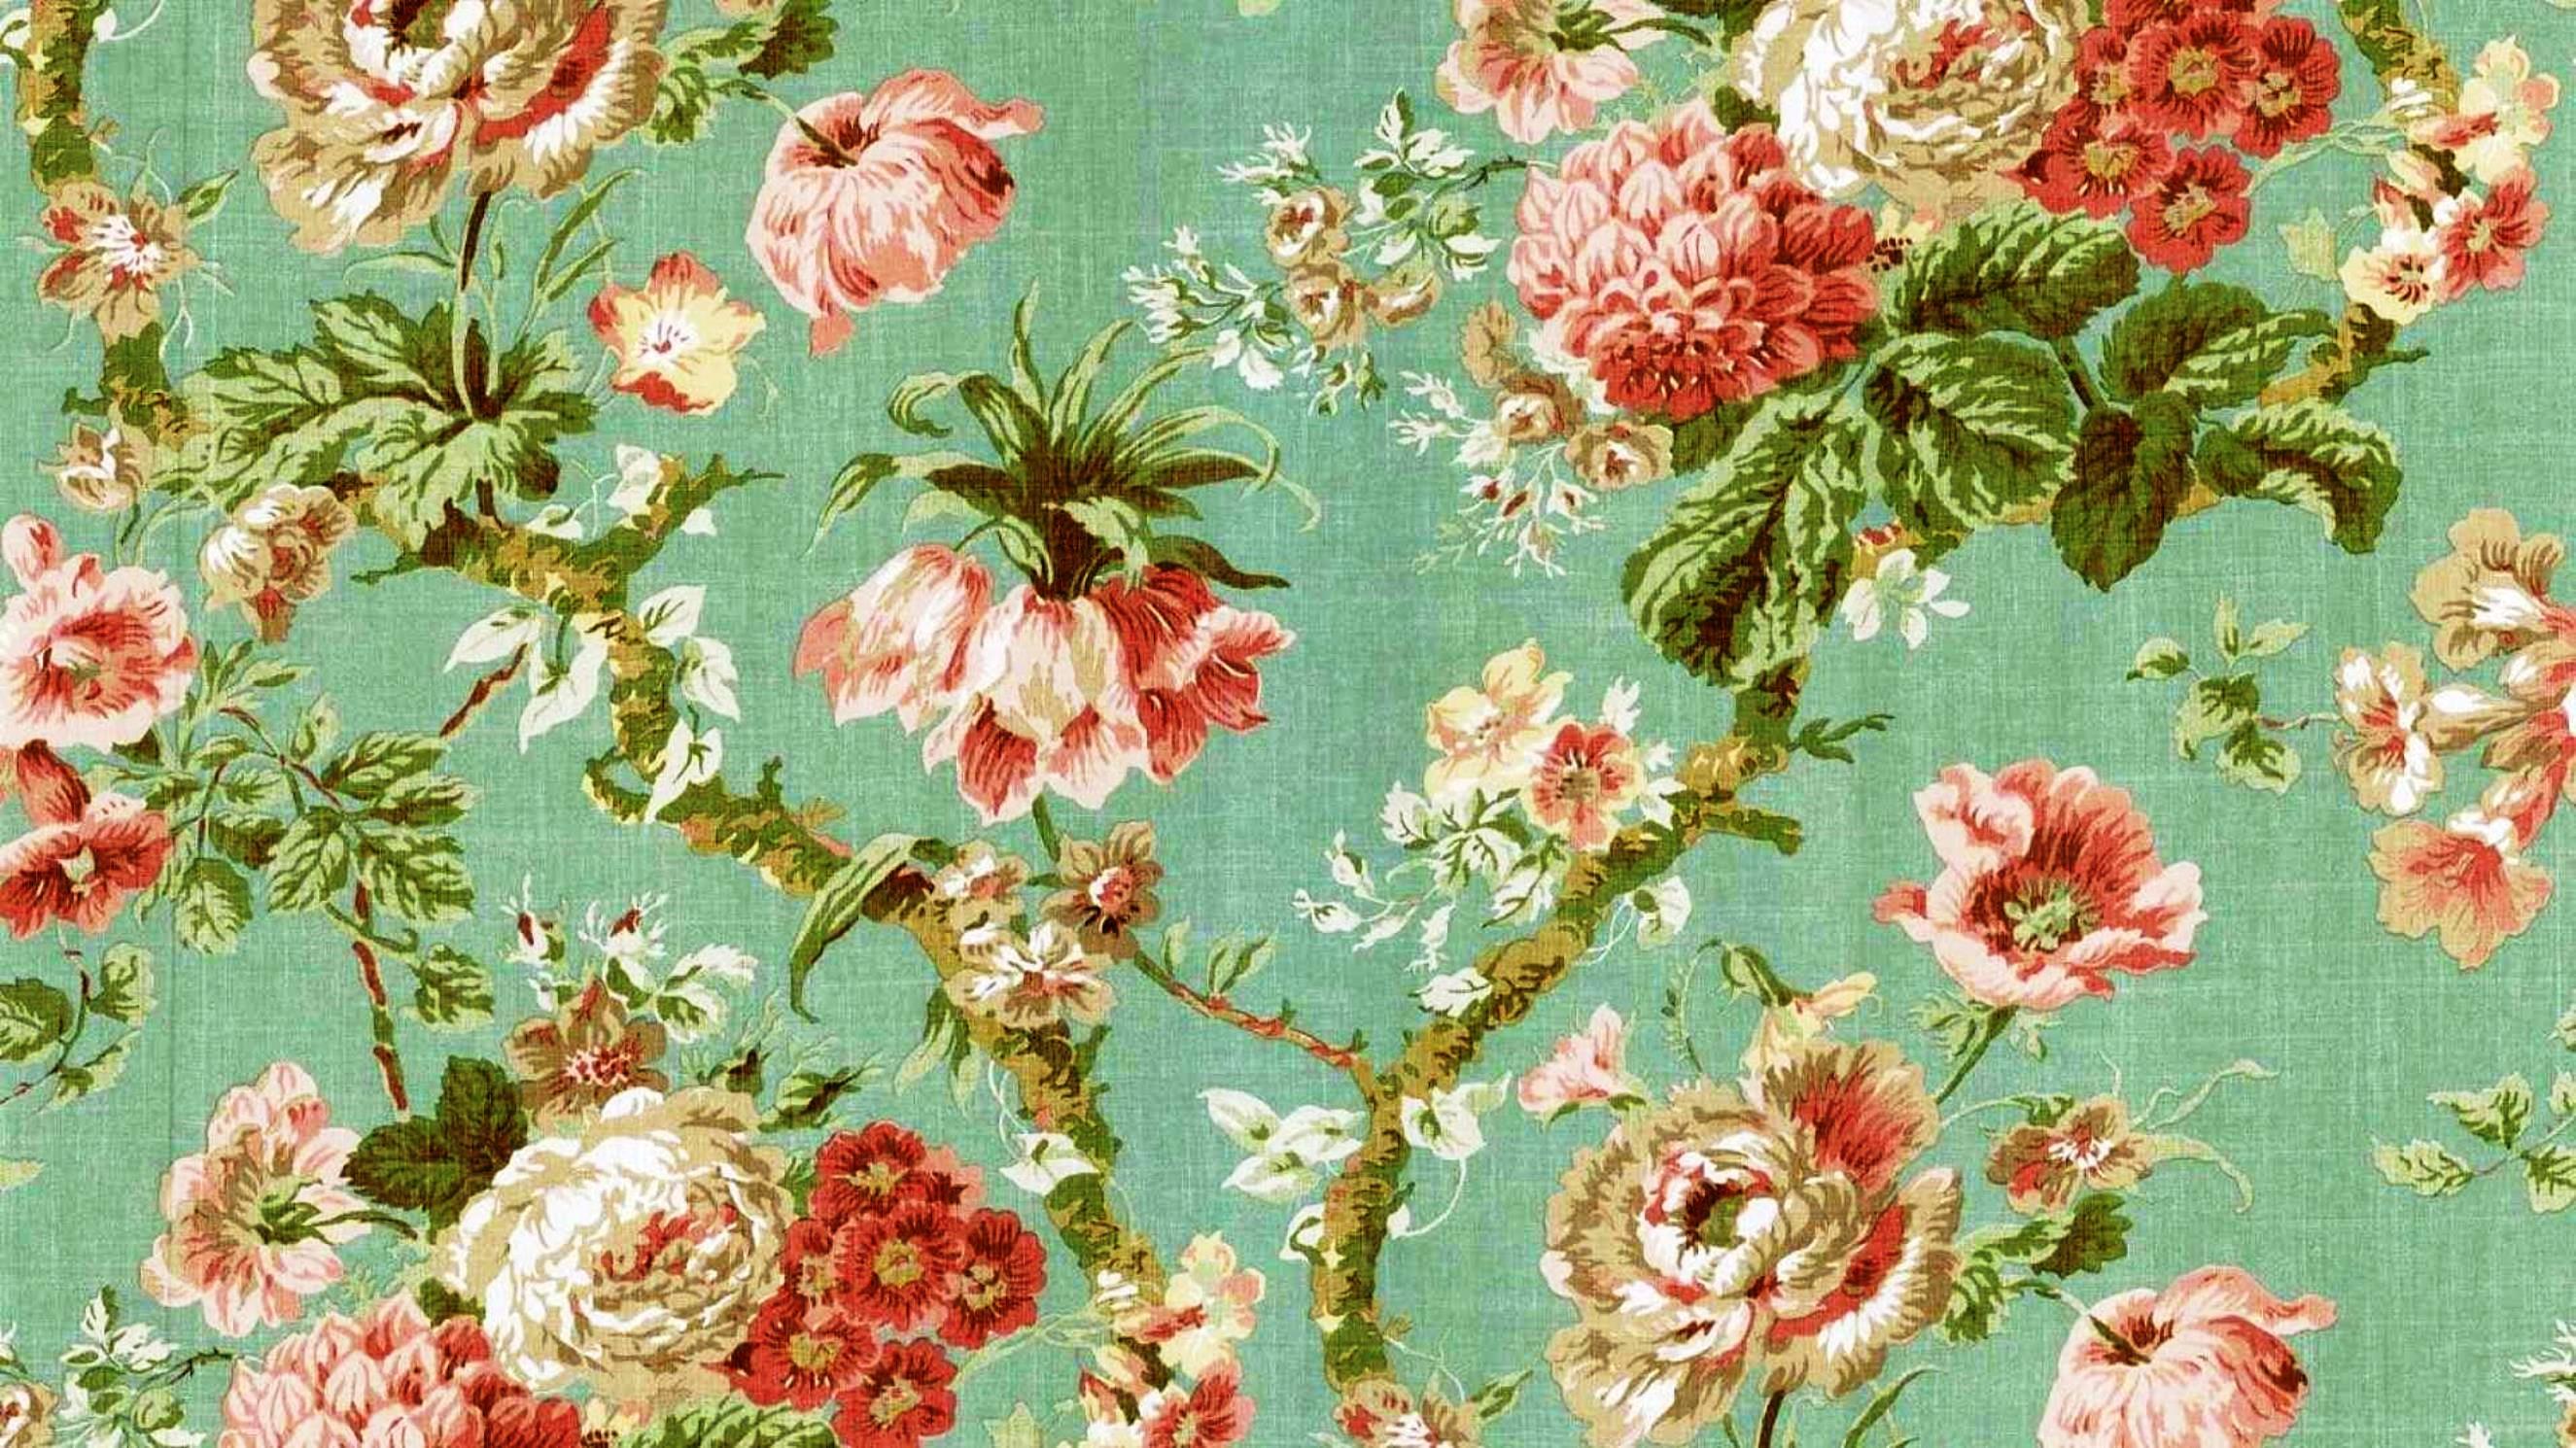 2650 x 1490 · jpeg - Vintage Floral Backgrounds | PixelsTalk